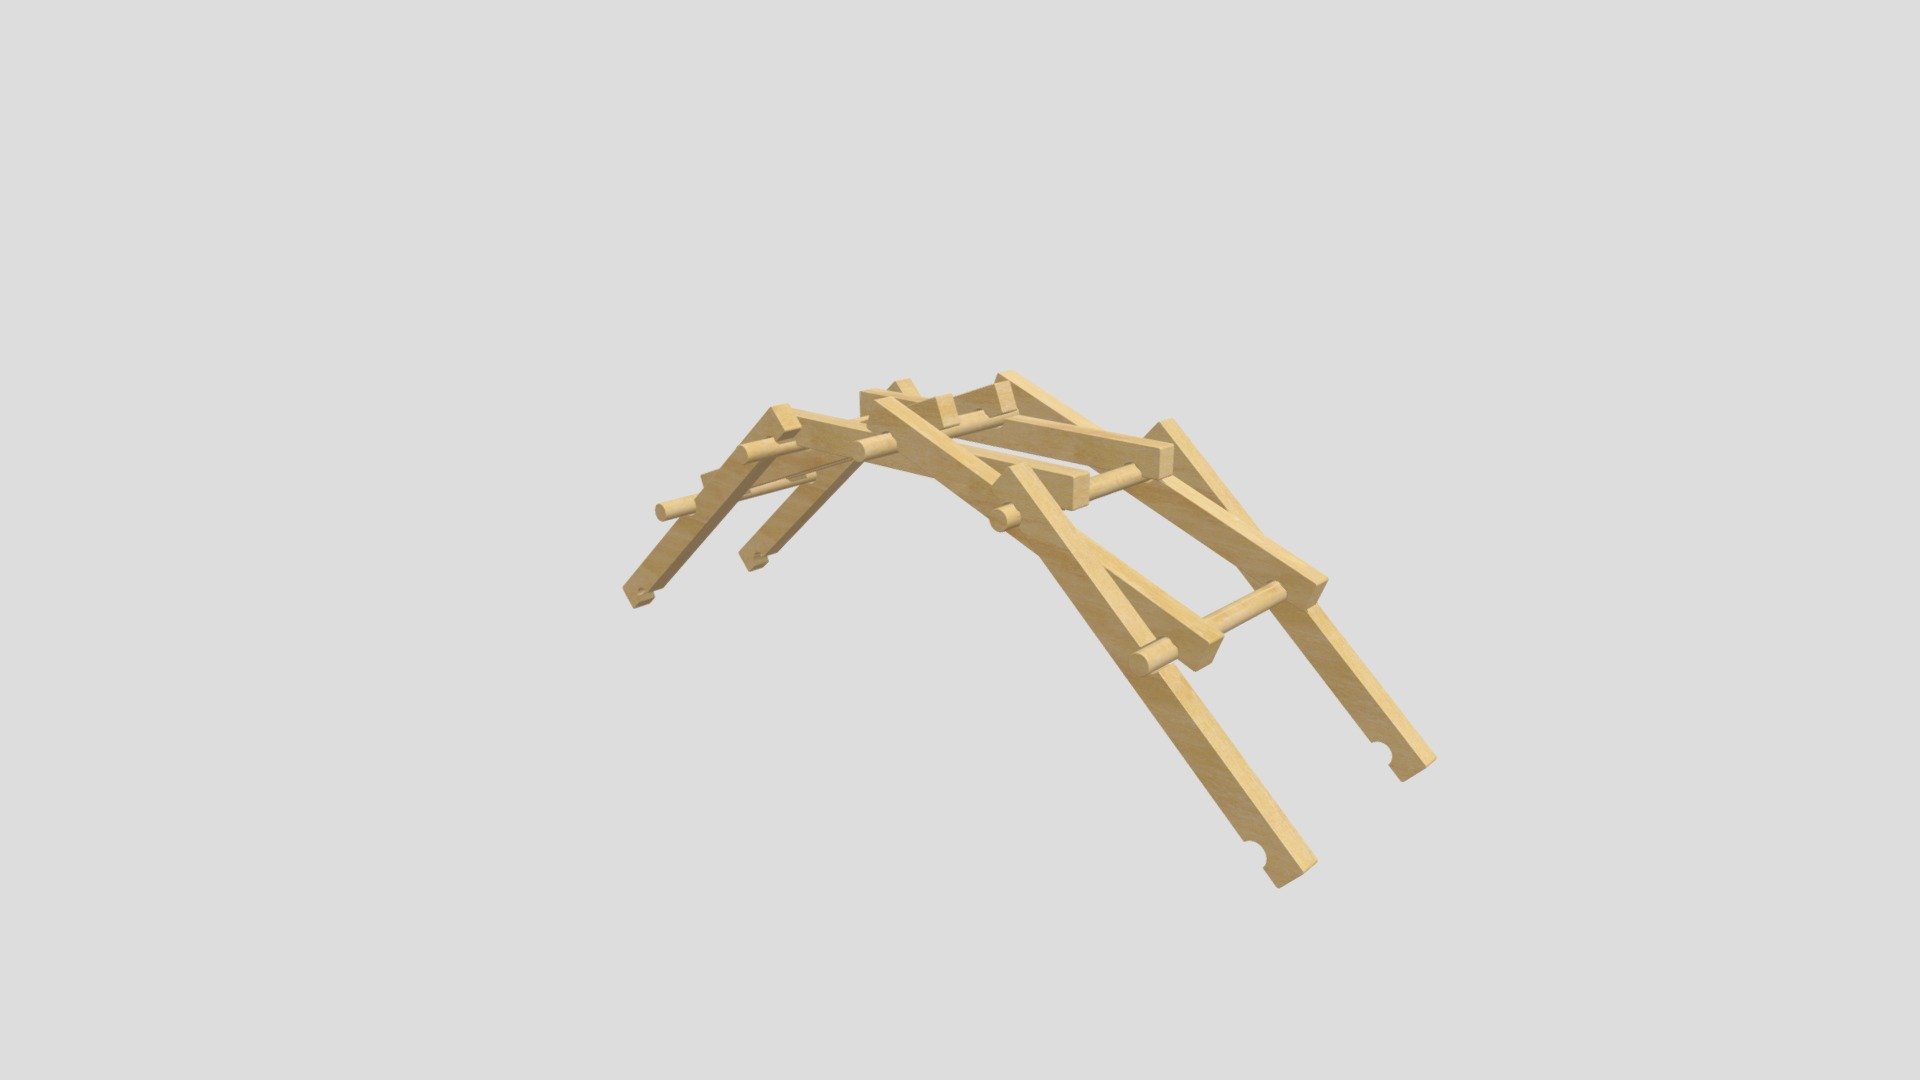 Leonardo da Vinci Bridge - Leonardo da Vinci Bridge - 3D model by Yar (@ygol) 3d model